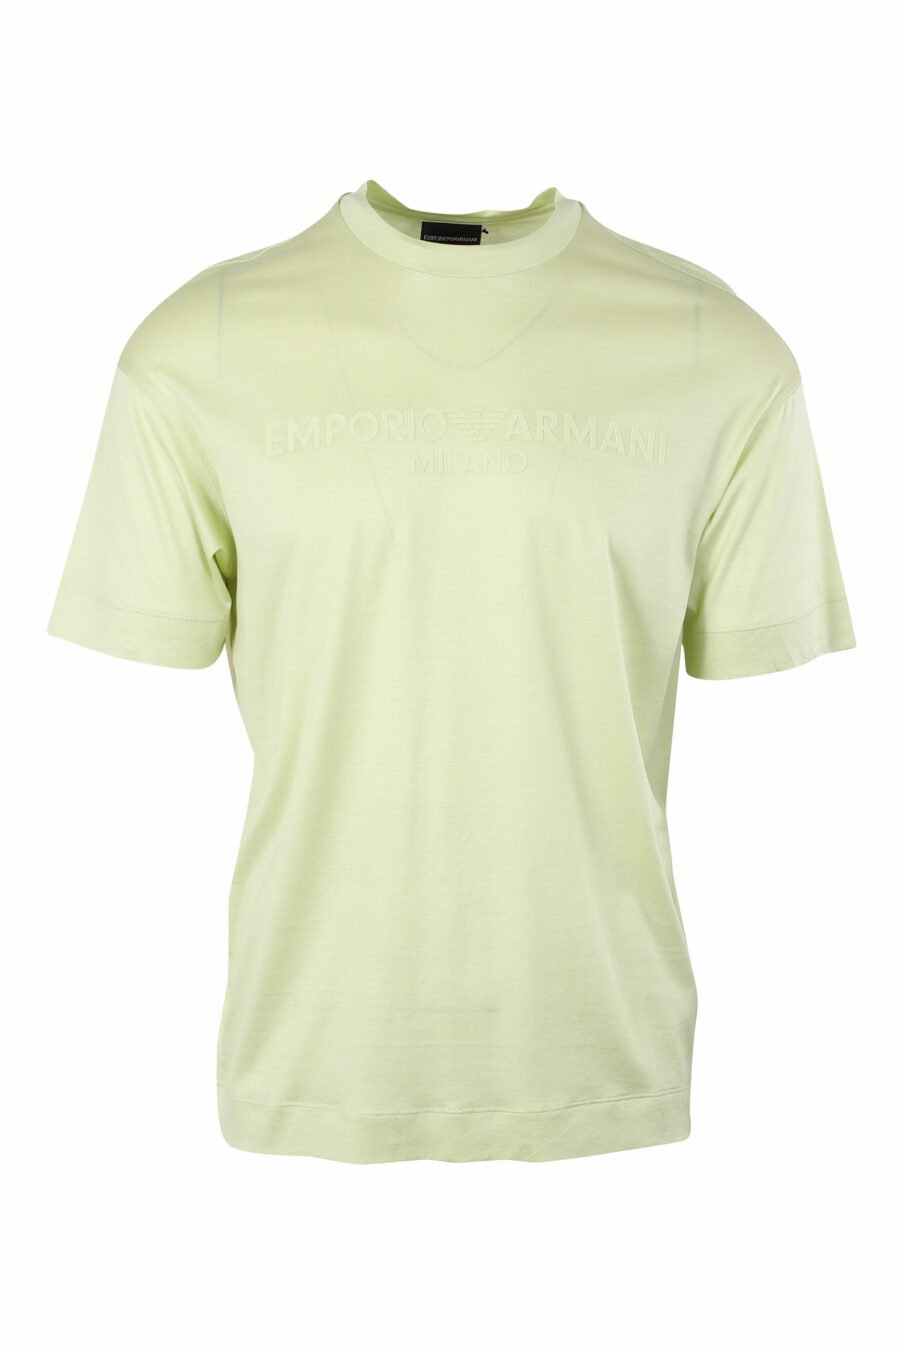 Camiseta verde con maxilogo centrado - IMG 9629